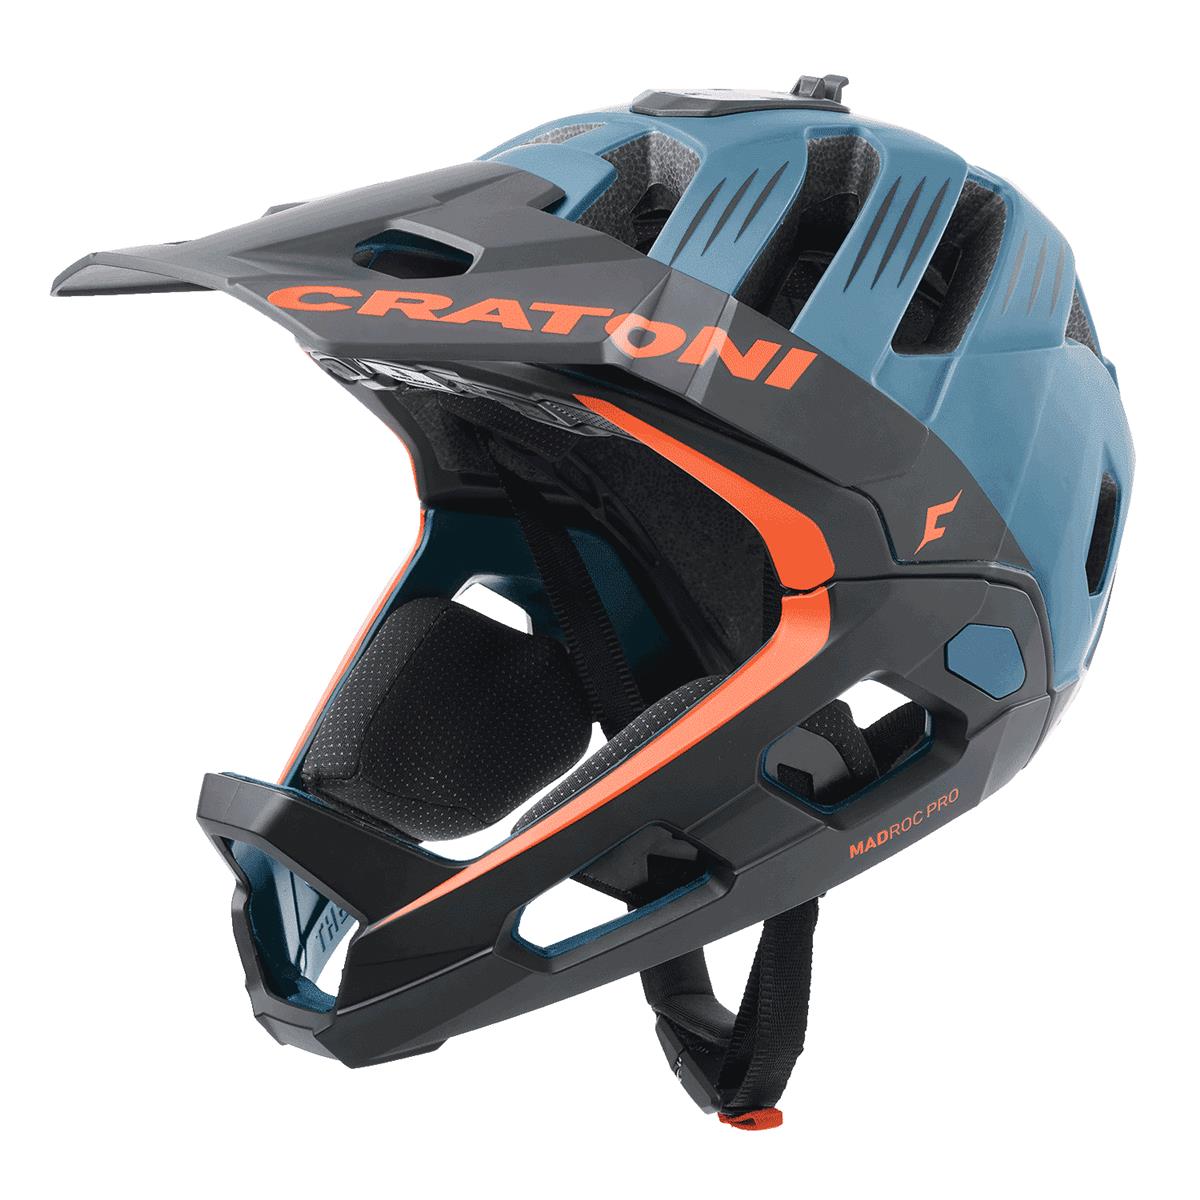 Casco Madroc Pro Bluetooth Smart Helmet Blu taglia S/M (54-58cm)